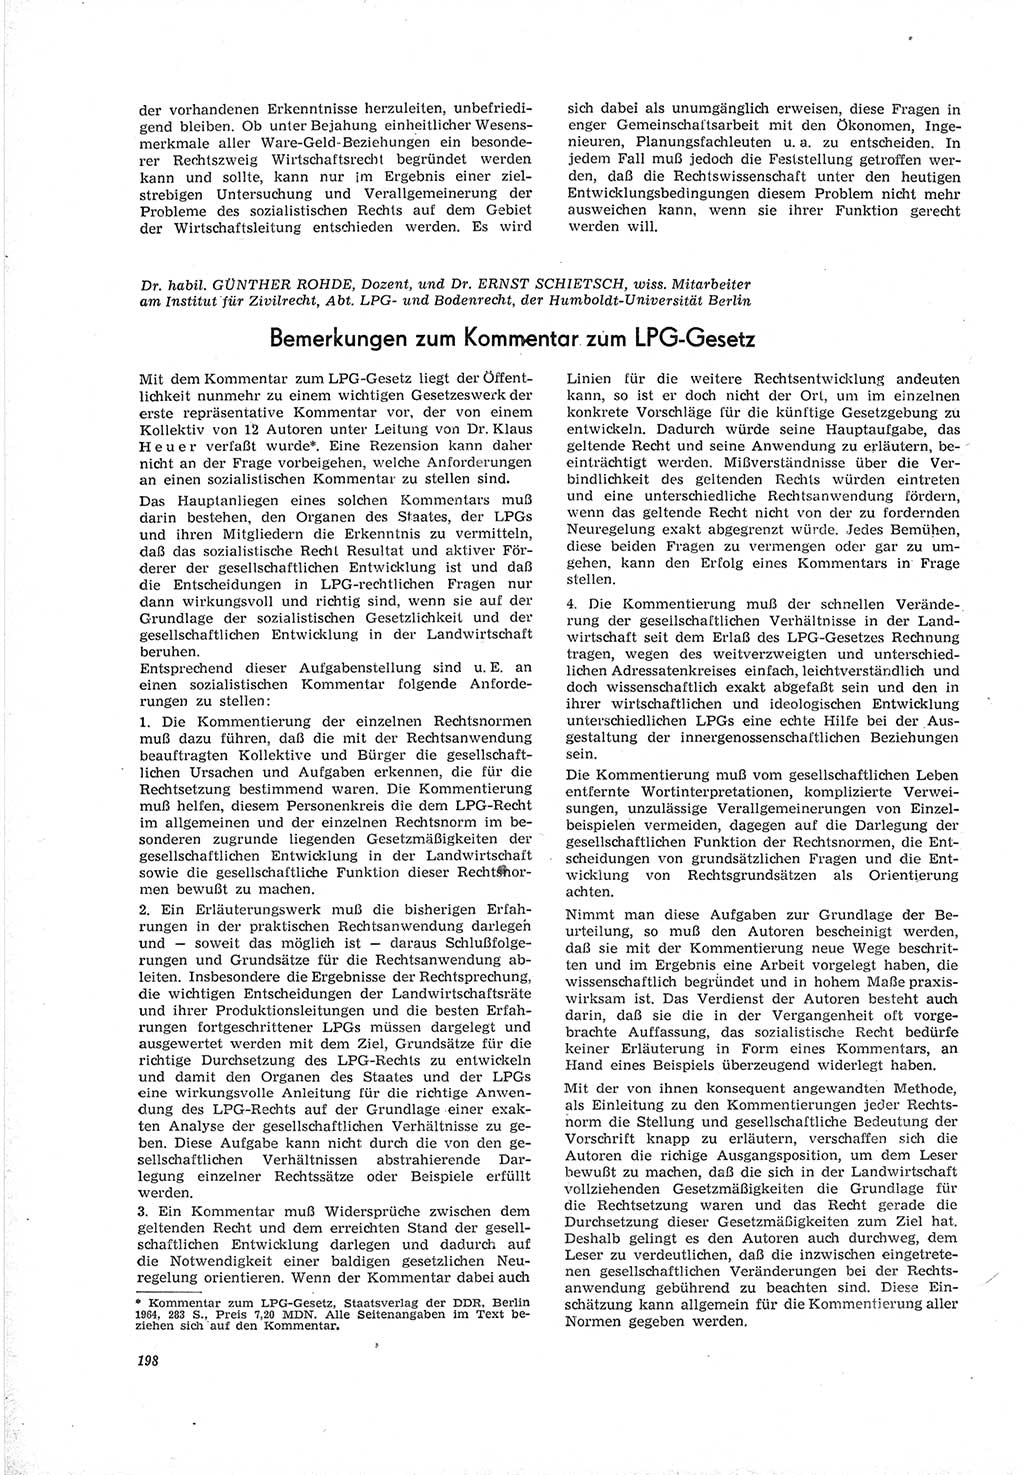 Neue Justiz (NJ), Zeitschrift für Recht und Rechtswissenschaft [Deutsche Demokratische Republik (DDR)], 19. Jahrgang 1965, Seite 198 (NJ DDR 1965, S. 198)